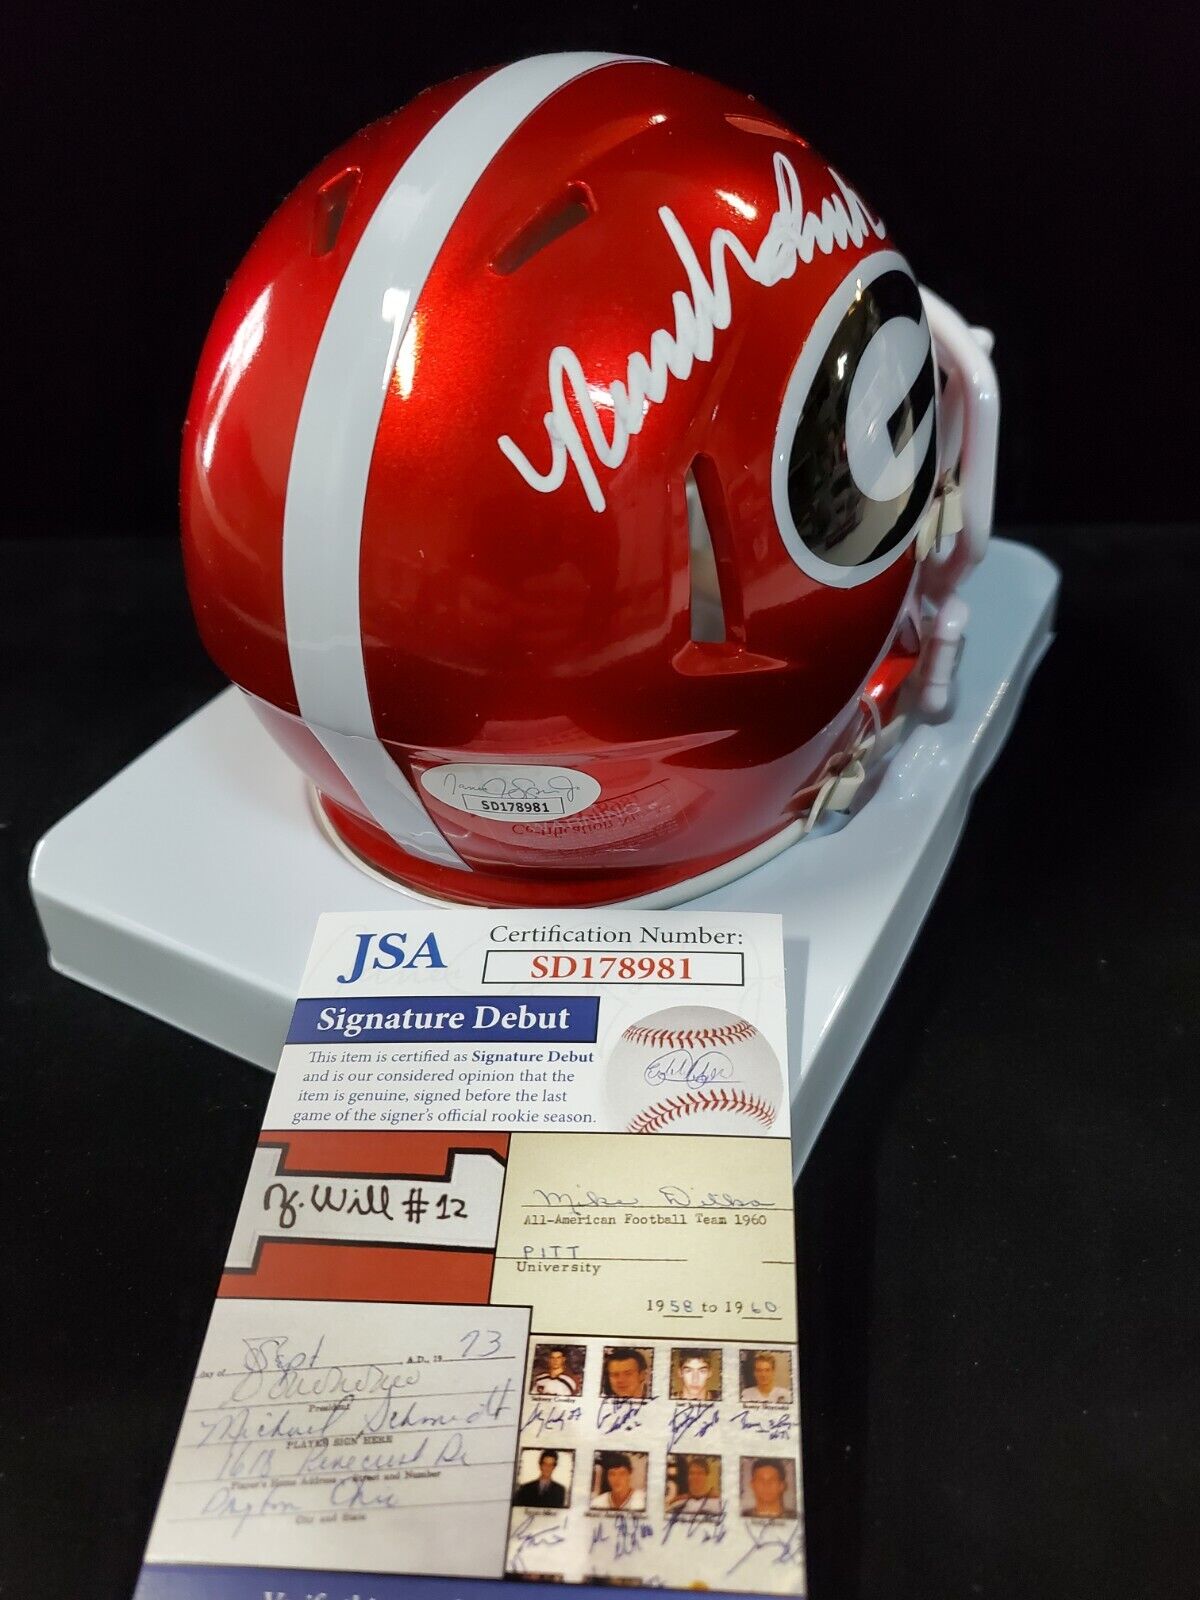 University of Georgia Bulldogs Game Used Football Helmet